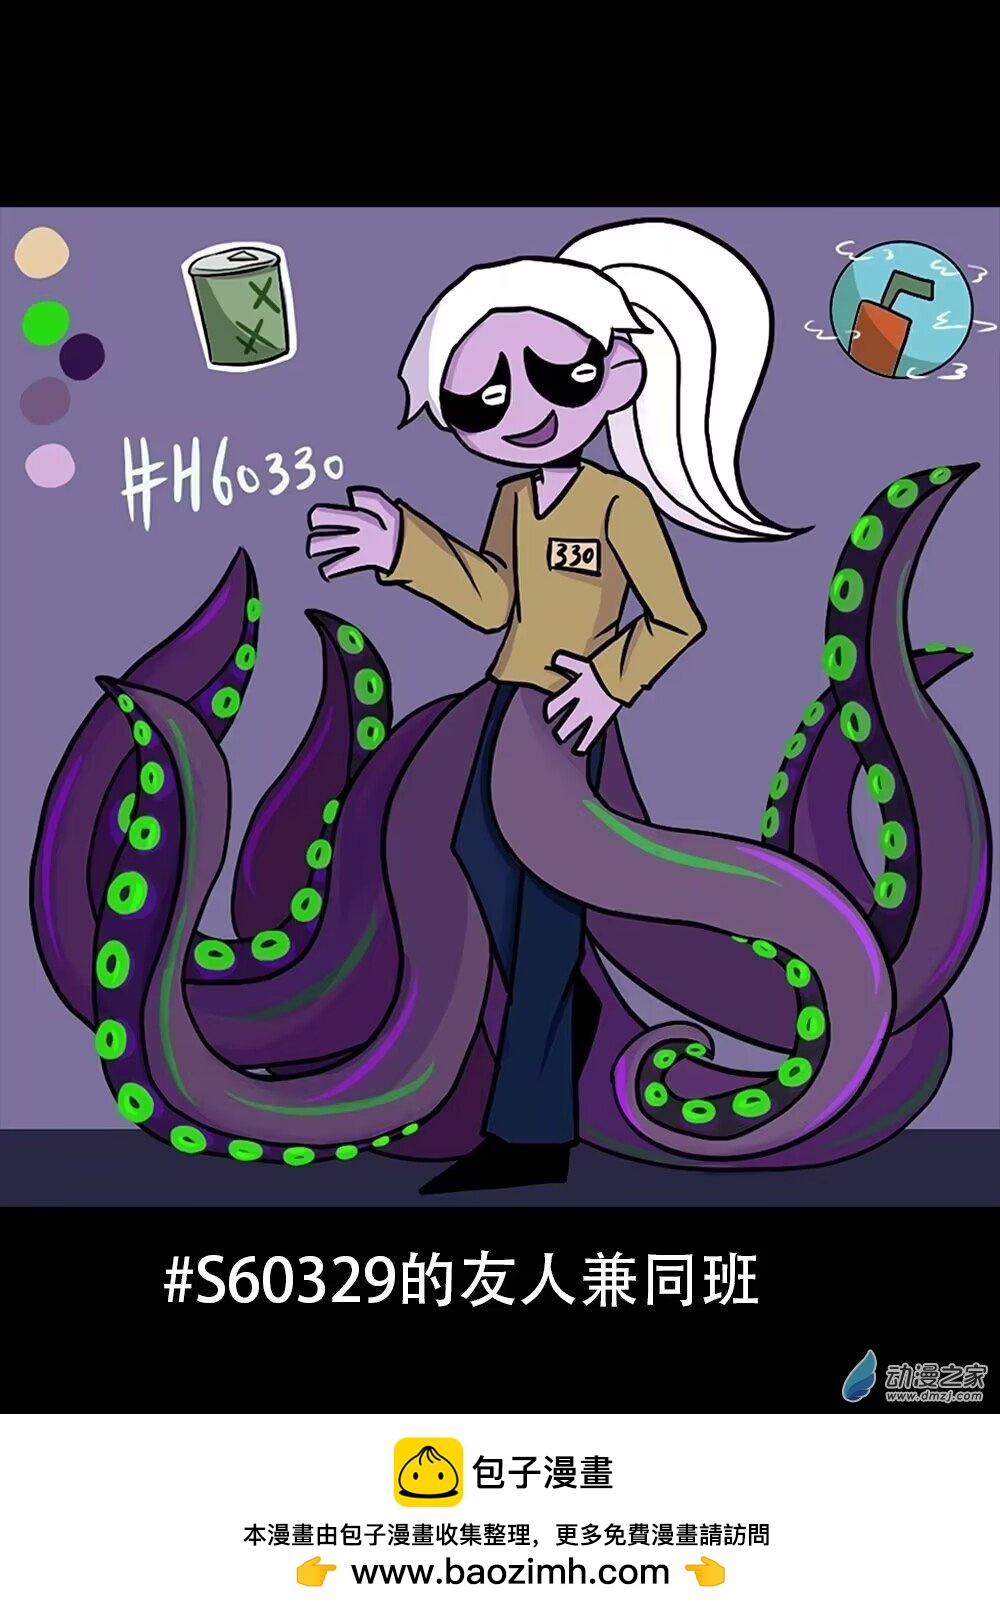 失敗的章魚導演 - 人物圖#H60330 - 1